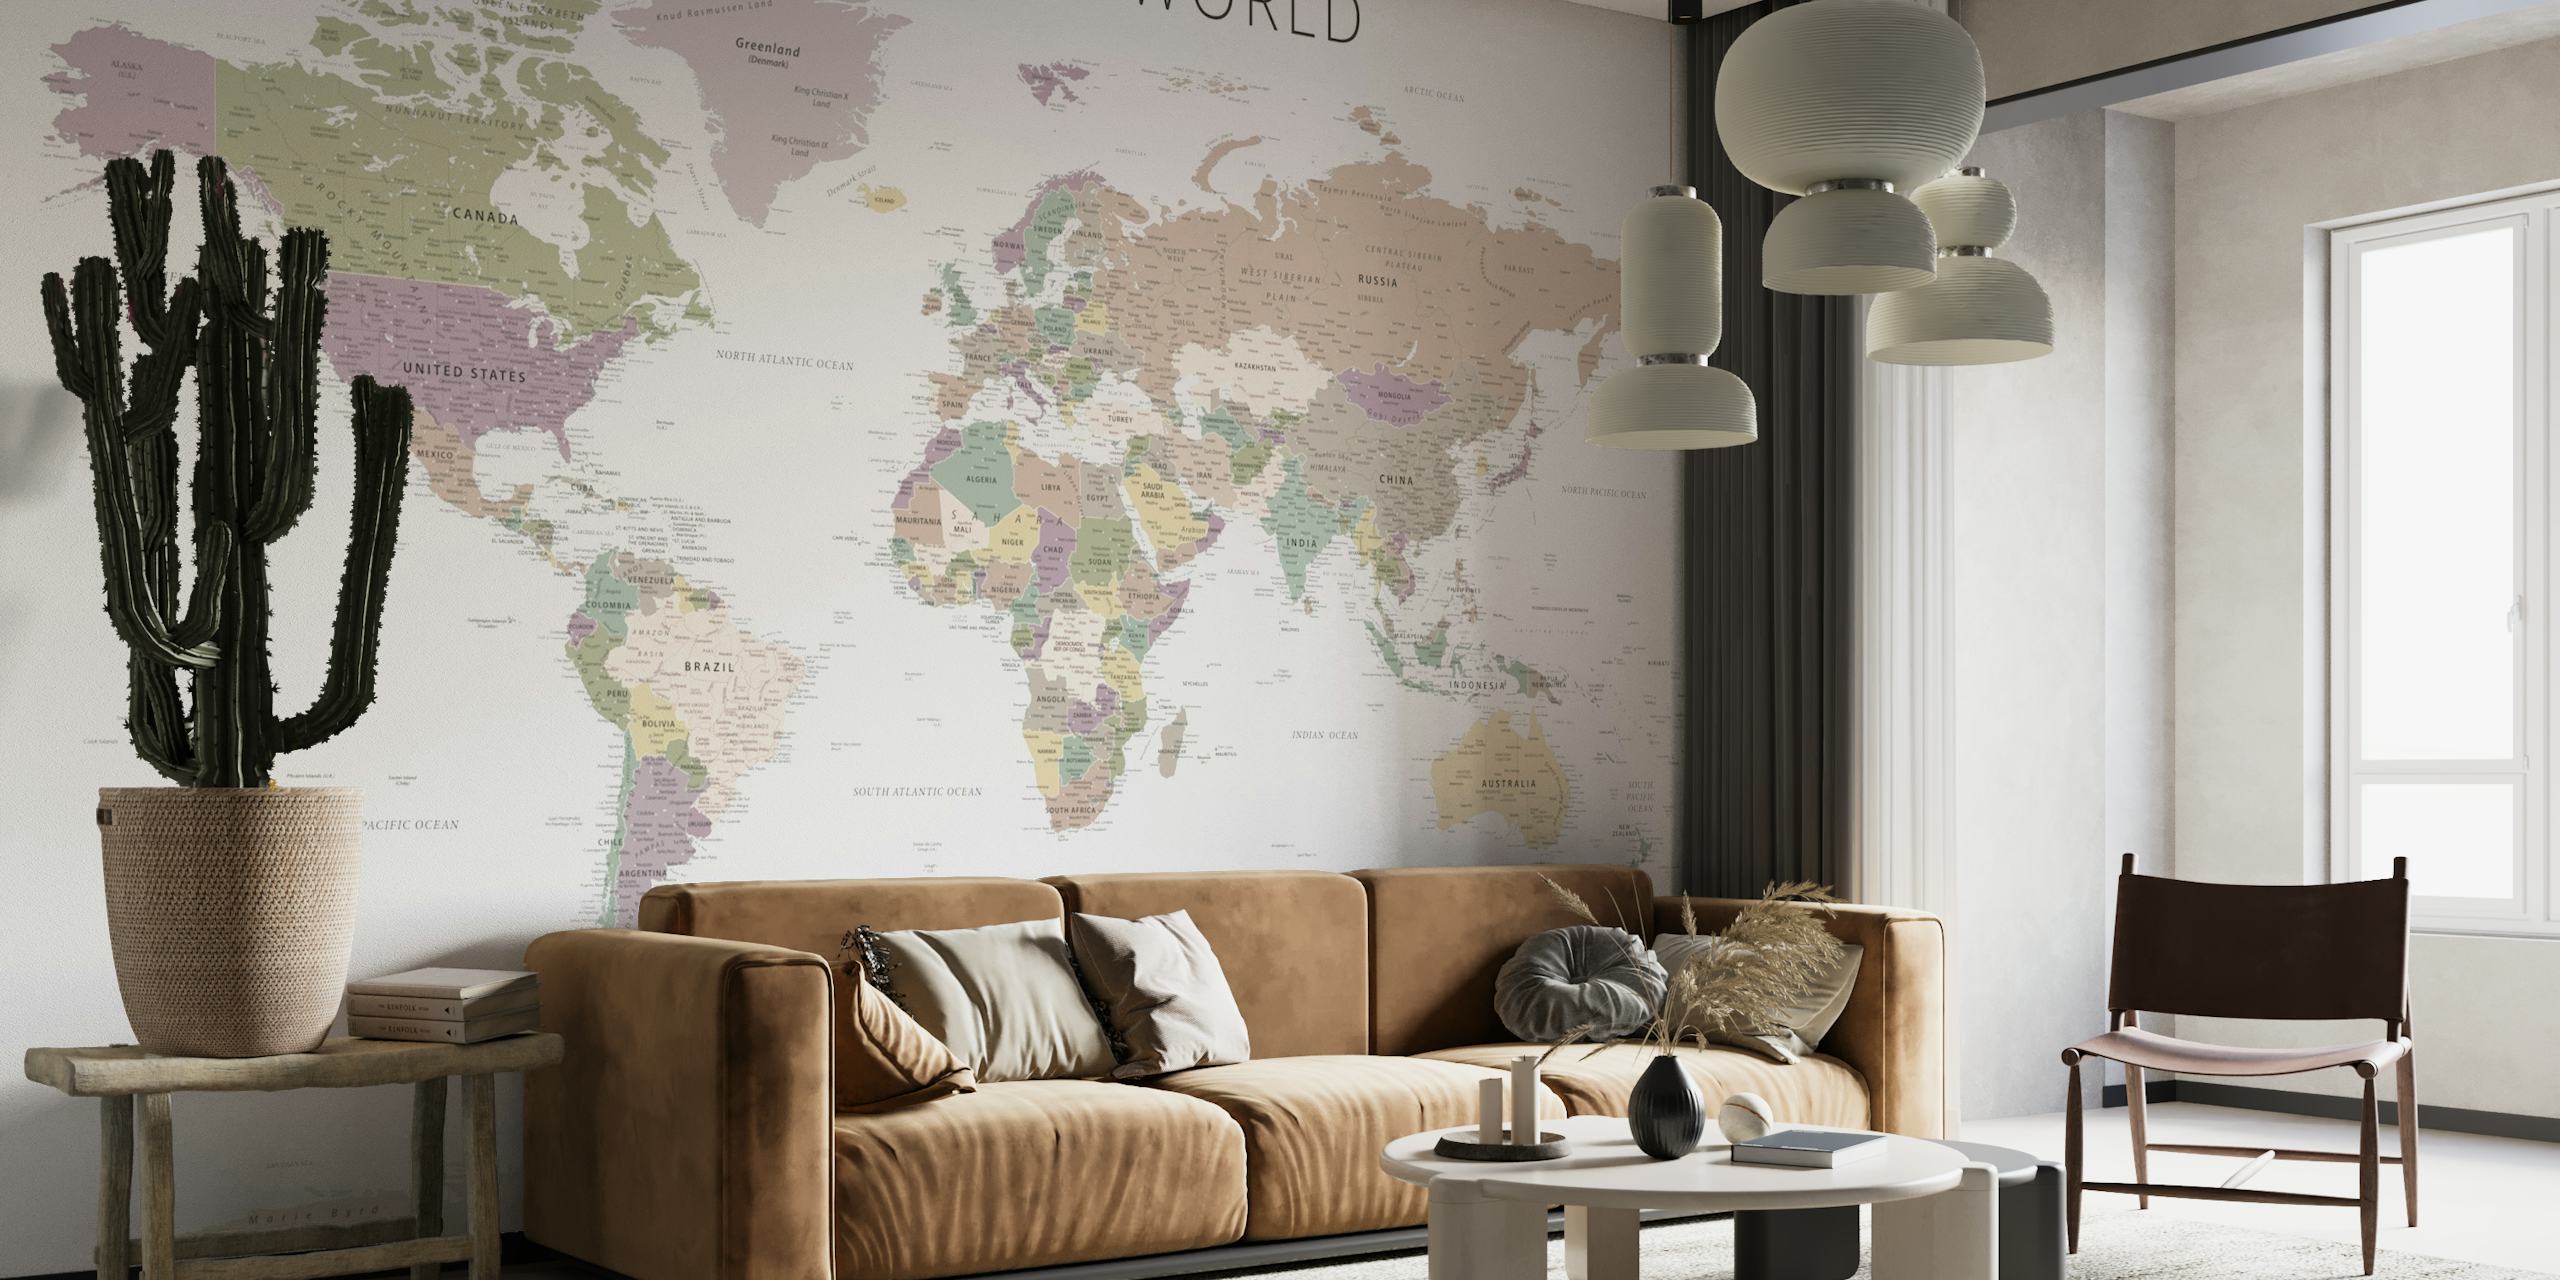 Fotomural vinílico de mapa mundial em tons neutros suaves com países e fronteiras detalhados